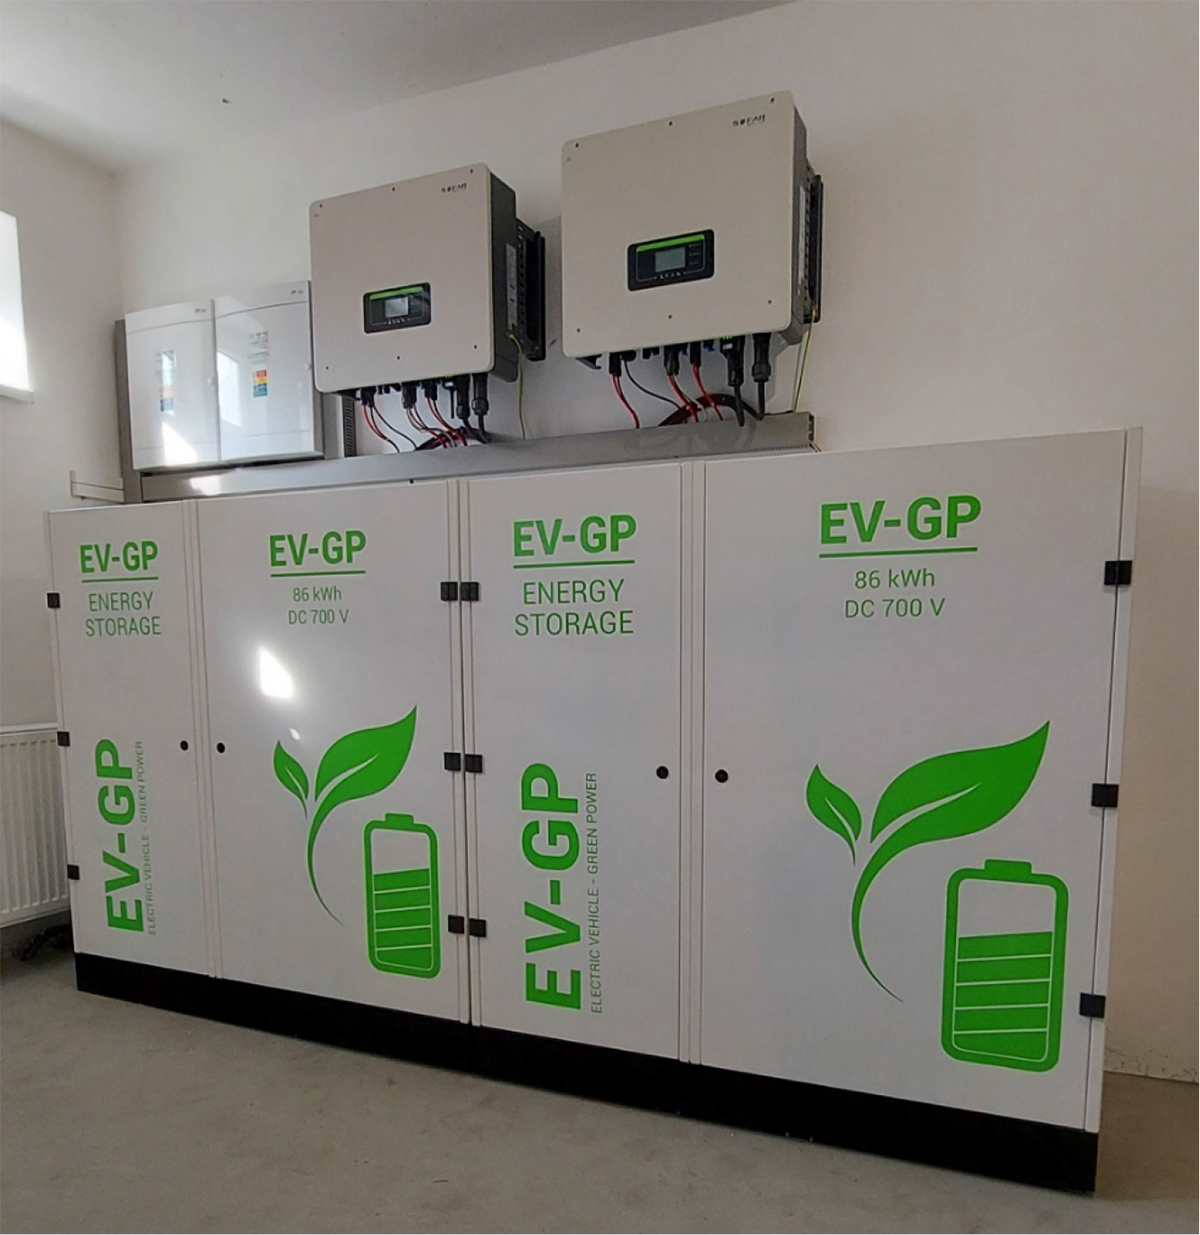 Úložisko energie pre firmy – zostava „malá“ firma – lokálny zdroj: hybridný menič/zostava 2 × 20 kW, EV-GP batériové úložisko 2 × 62 kWh, 